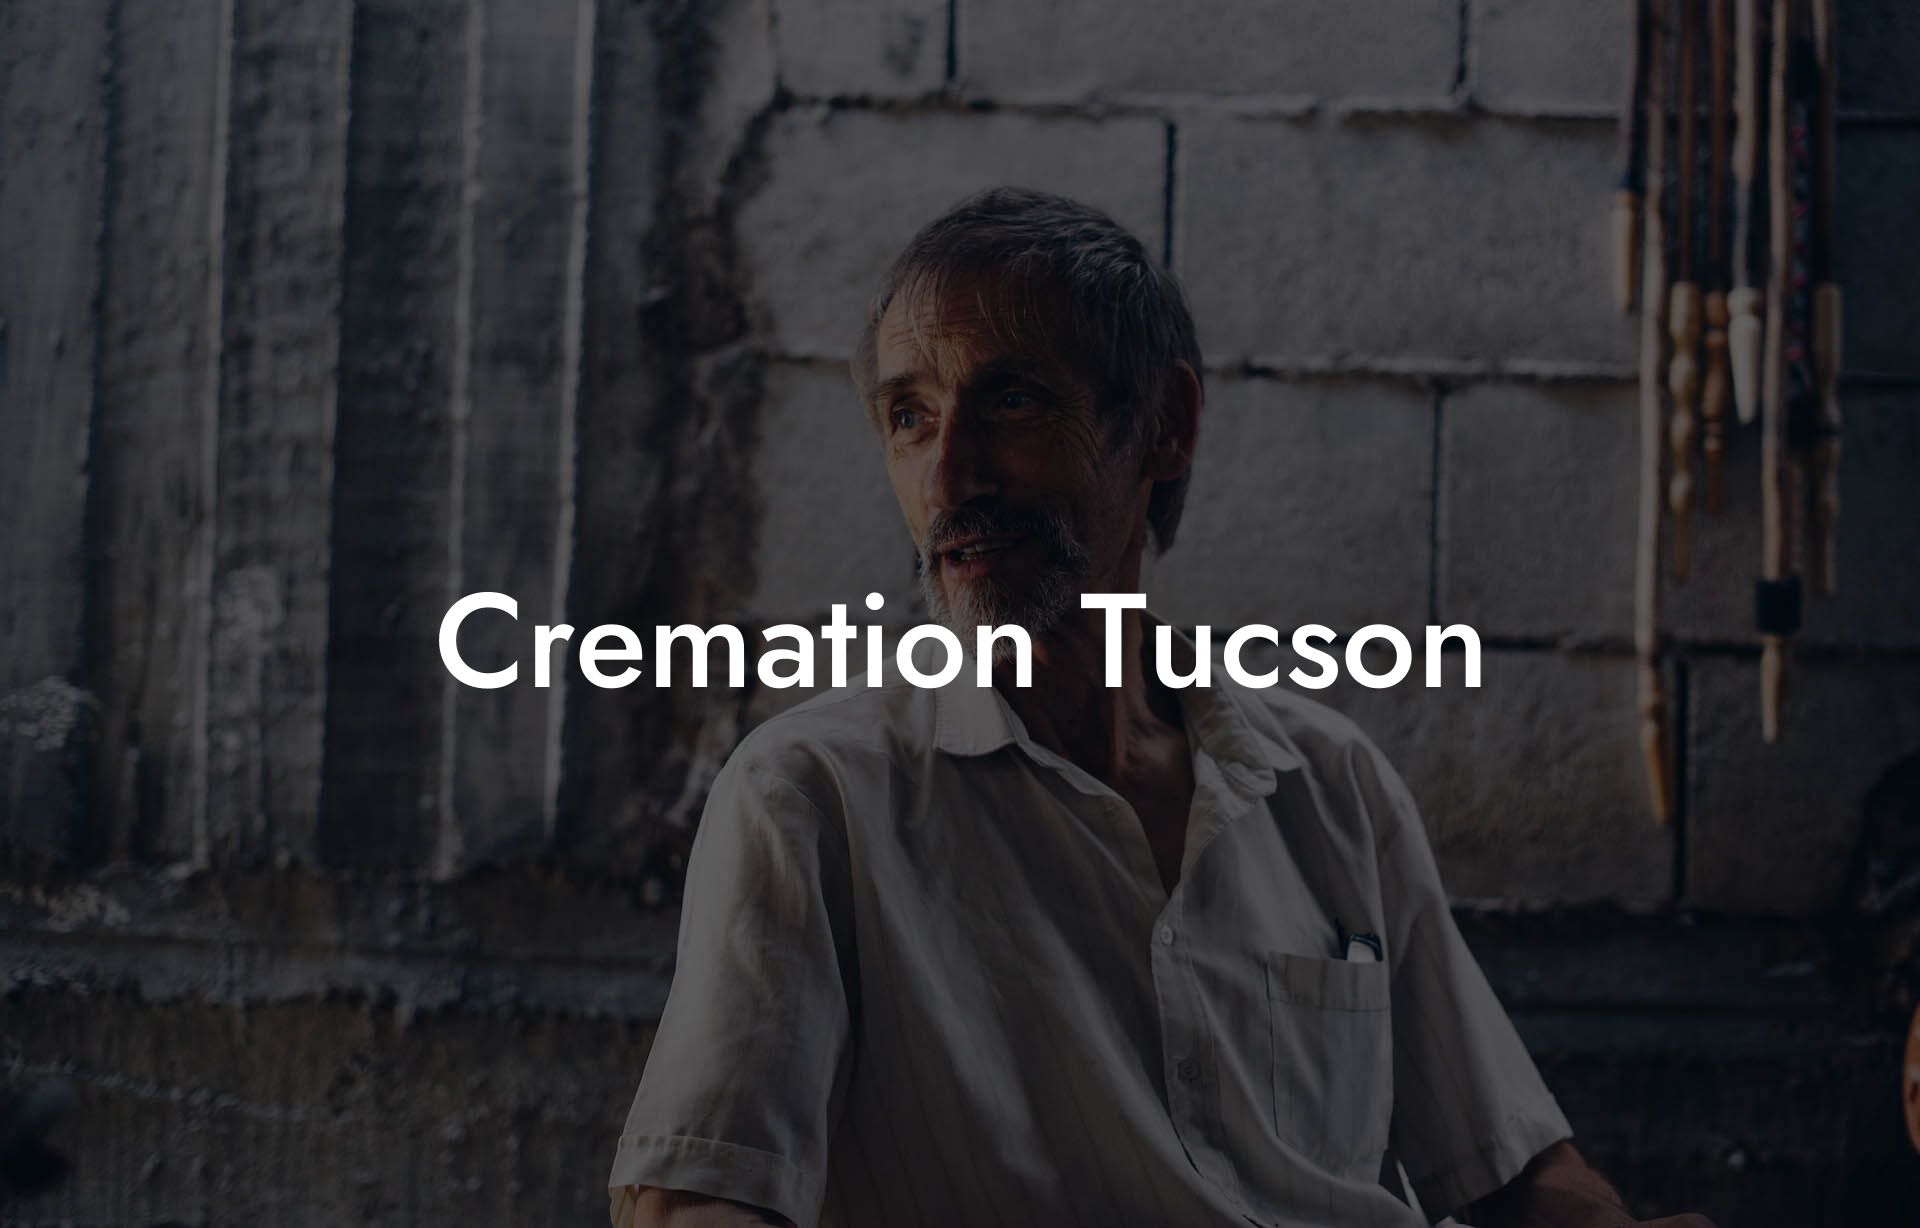 Cremation Tucson